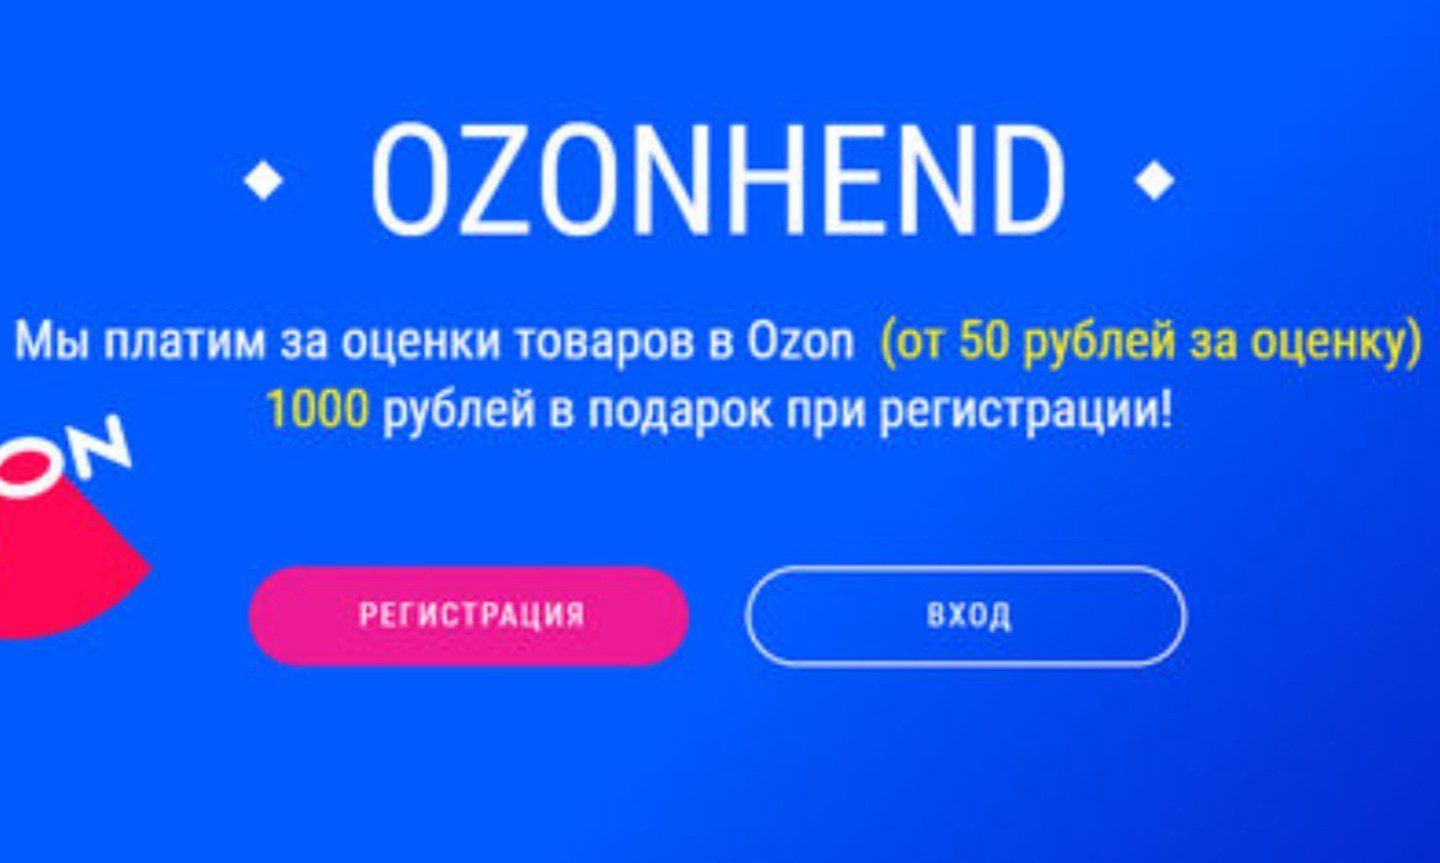 Ozonhend обзор сайта